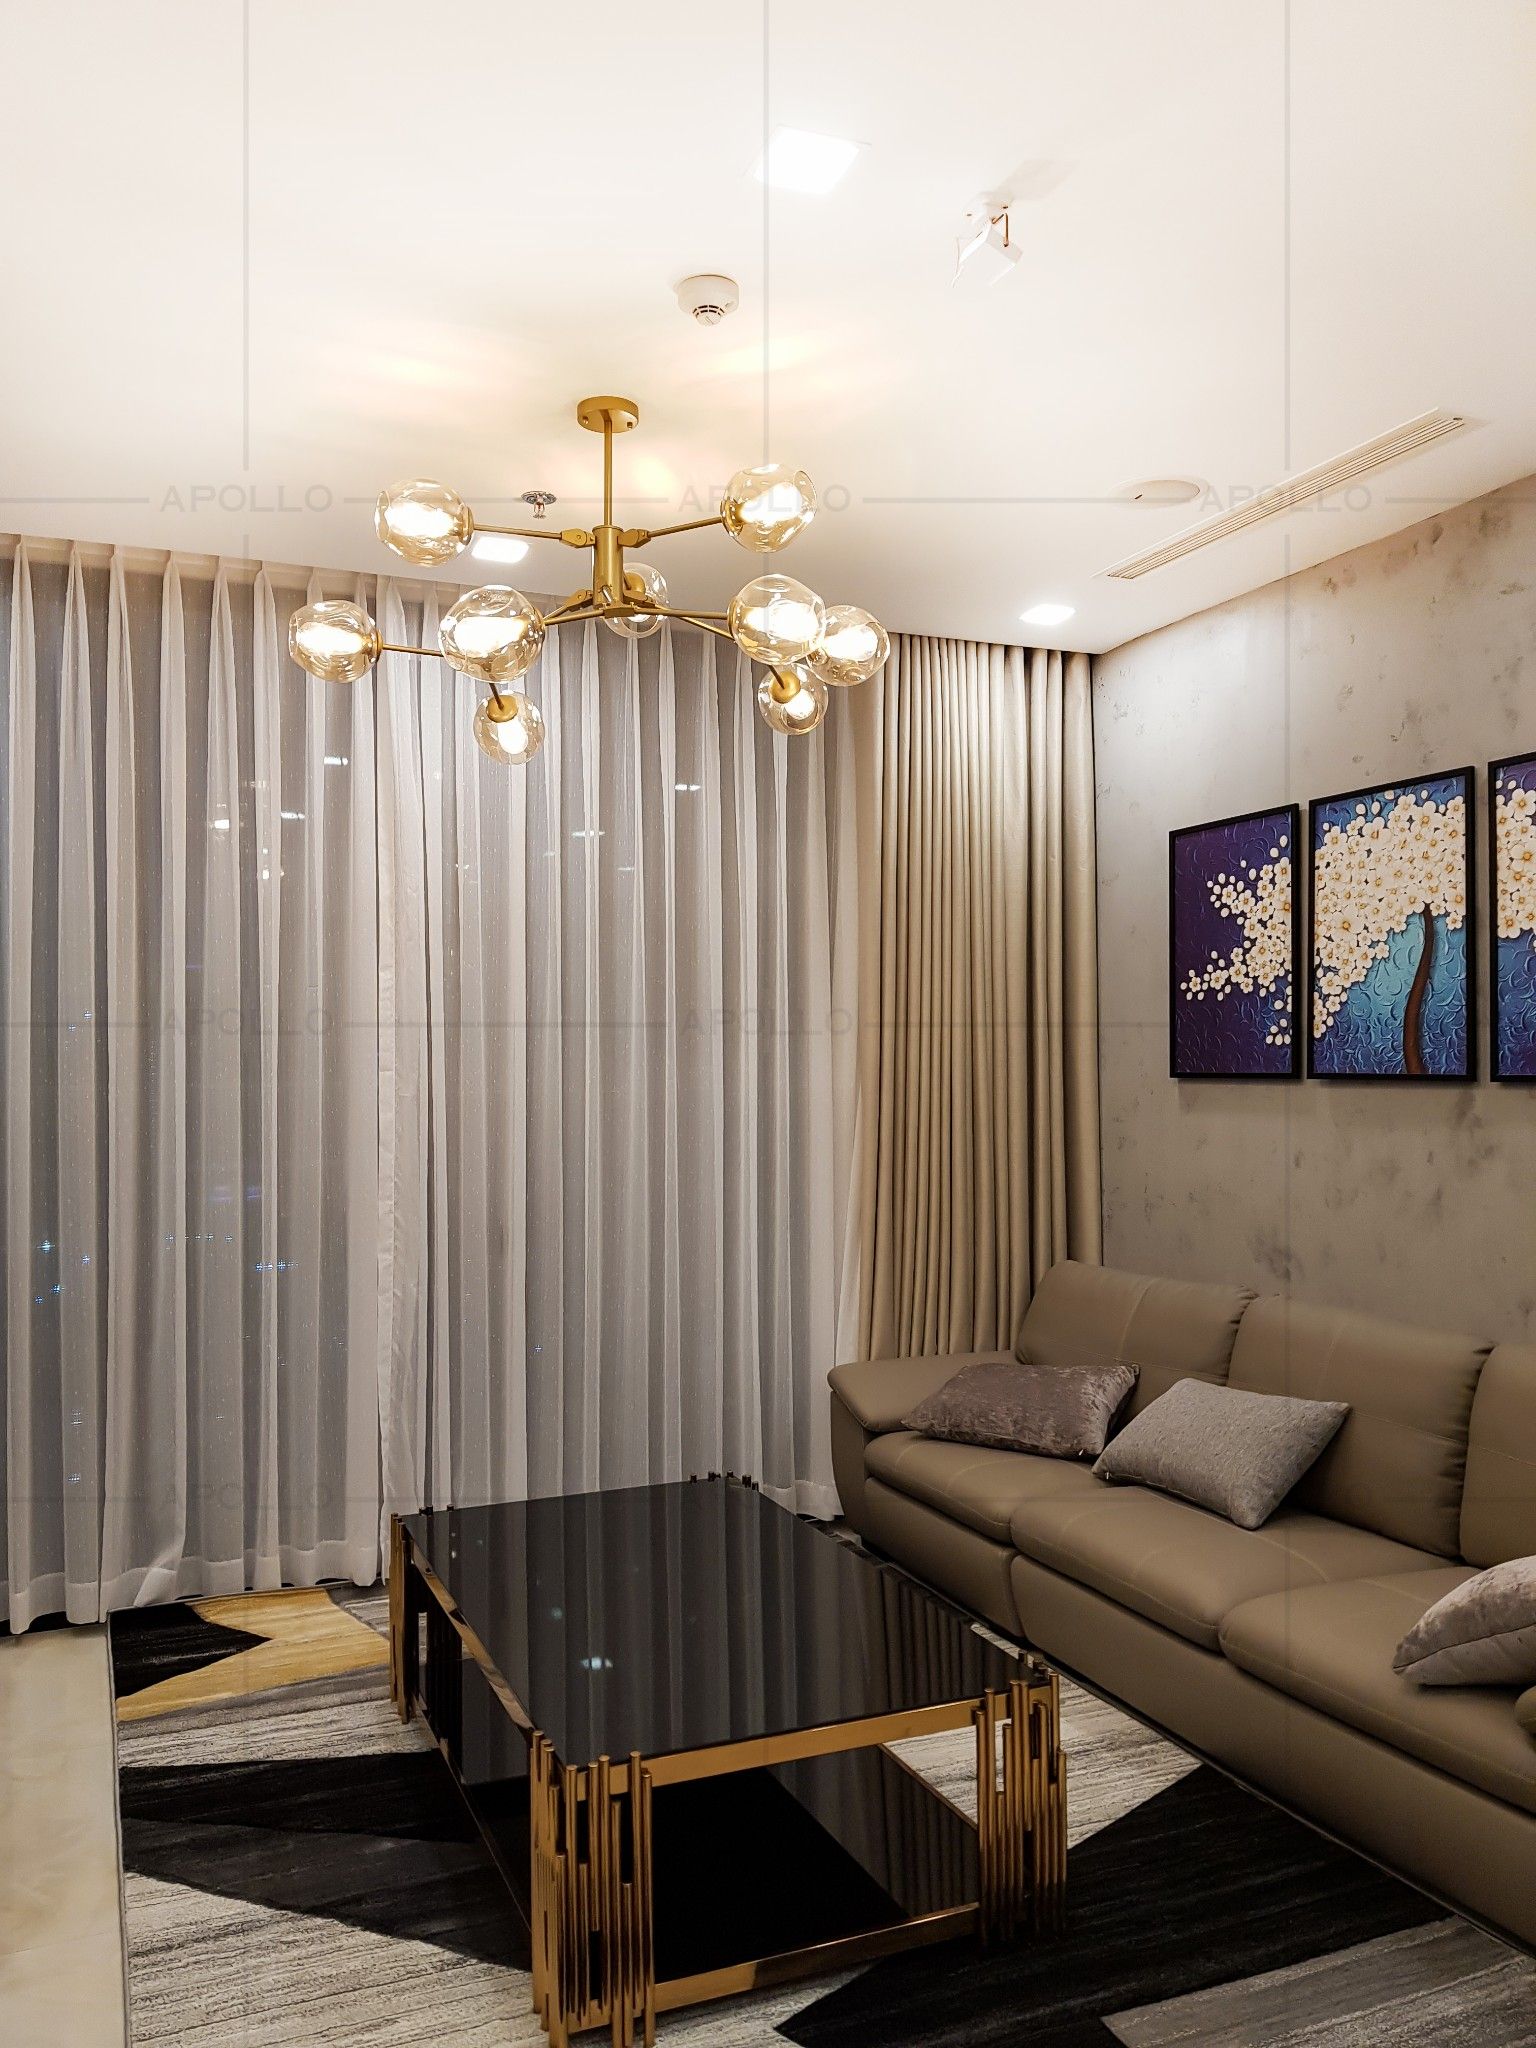 đèn trang trí phòng khách đẹp hiện đại cho căn hộ chung cư